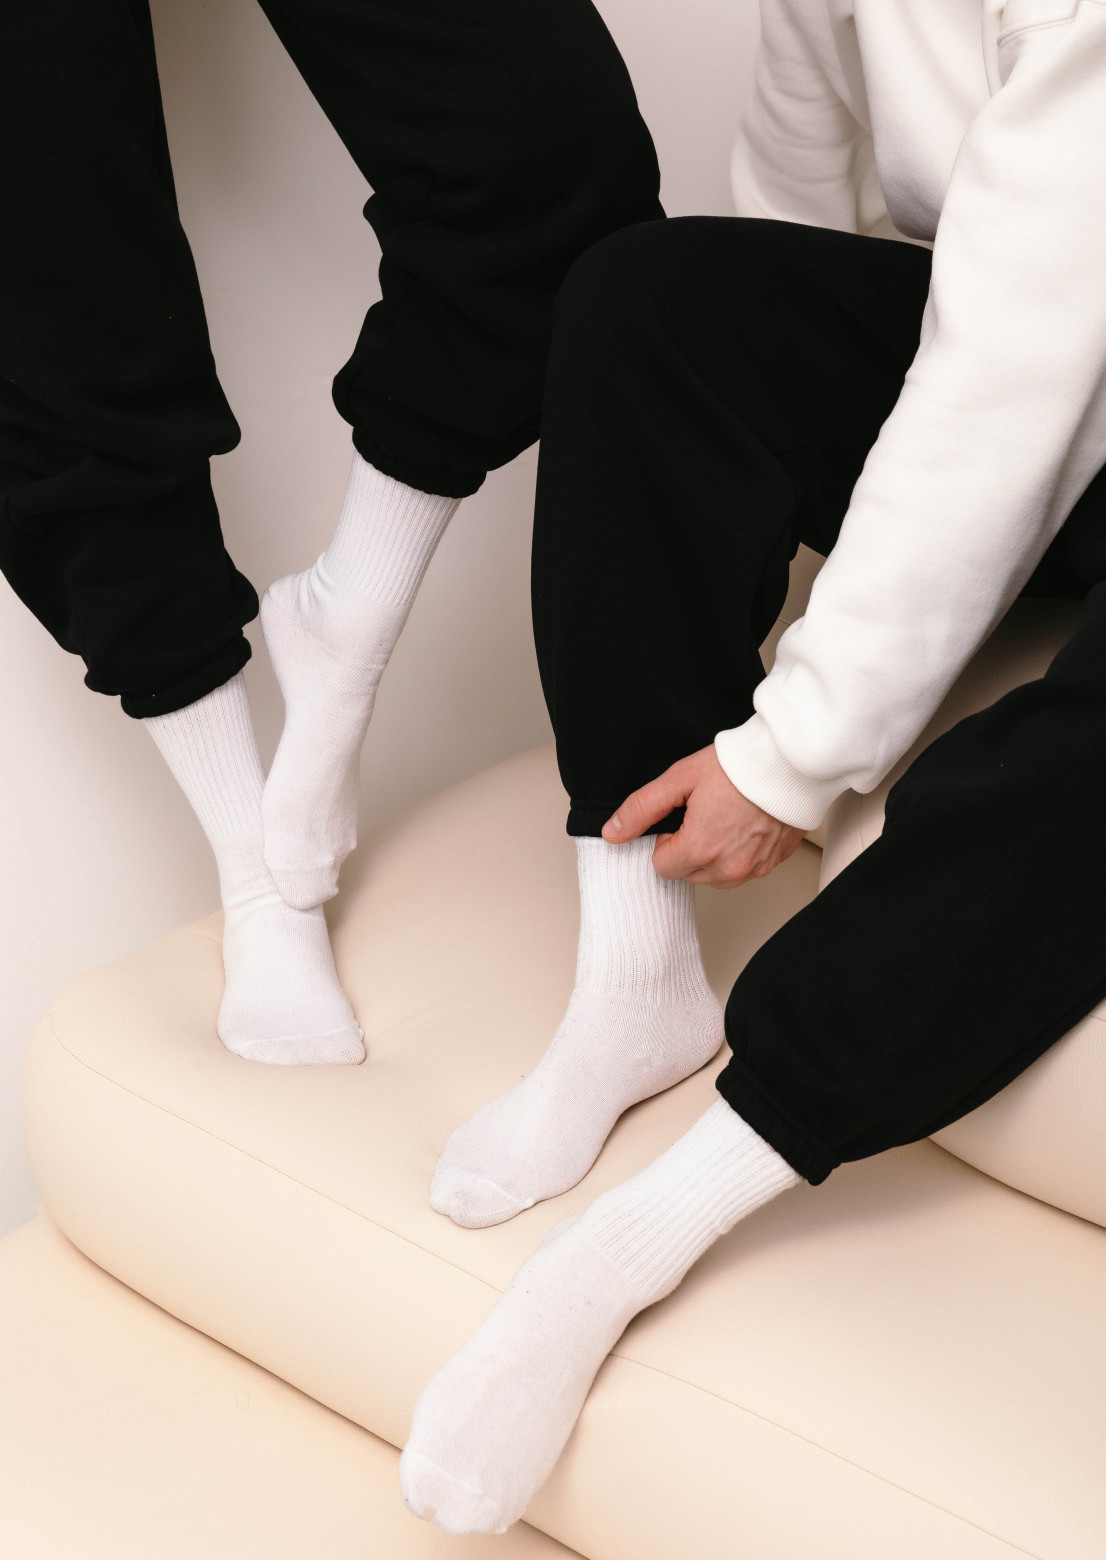 White socks 